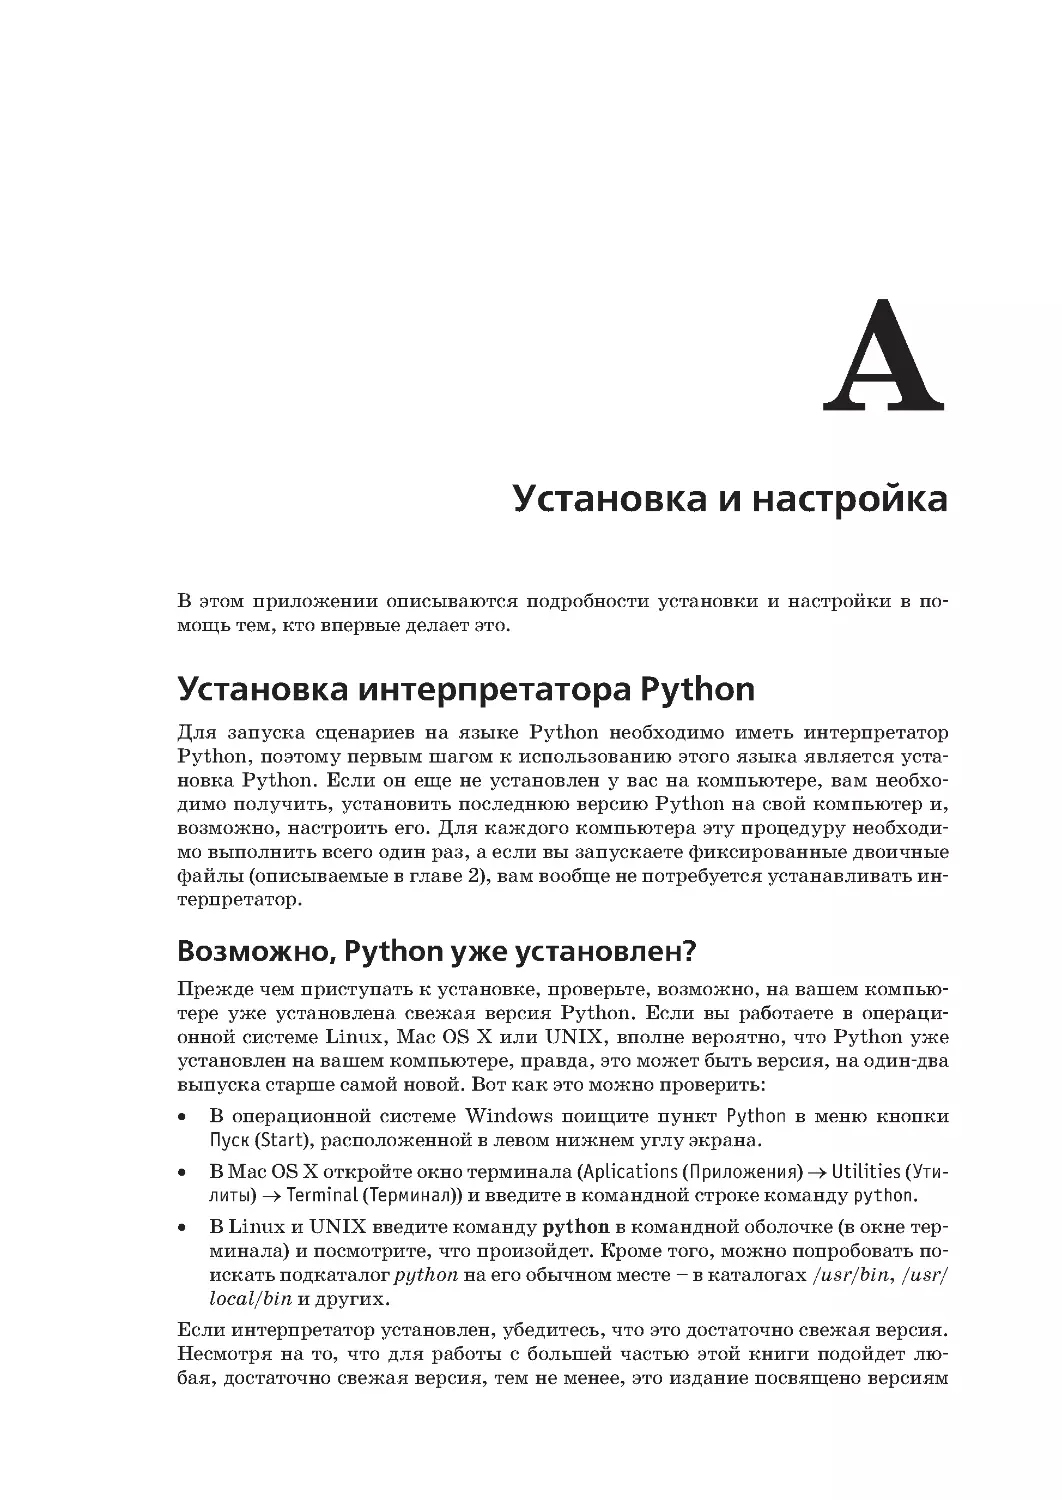 Приложение A.
Установка интерпретатора Python